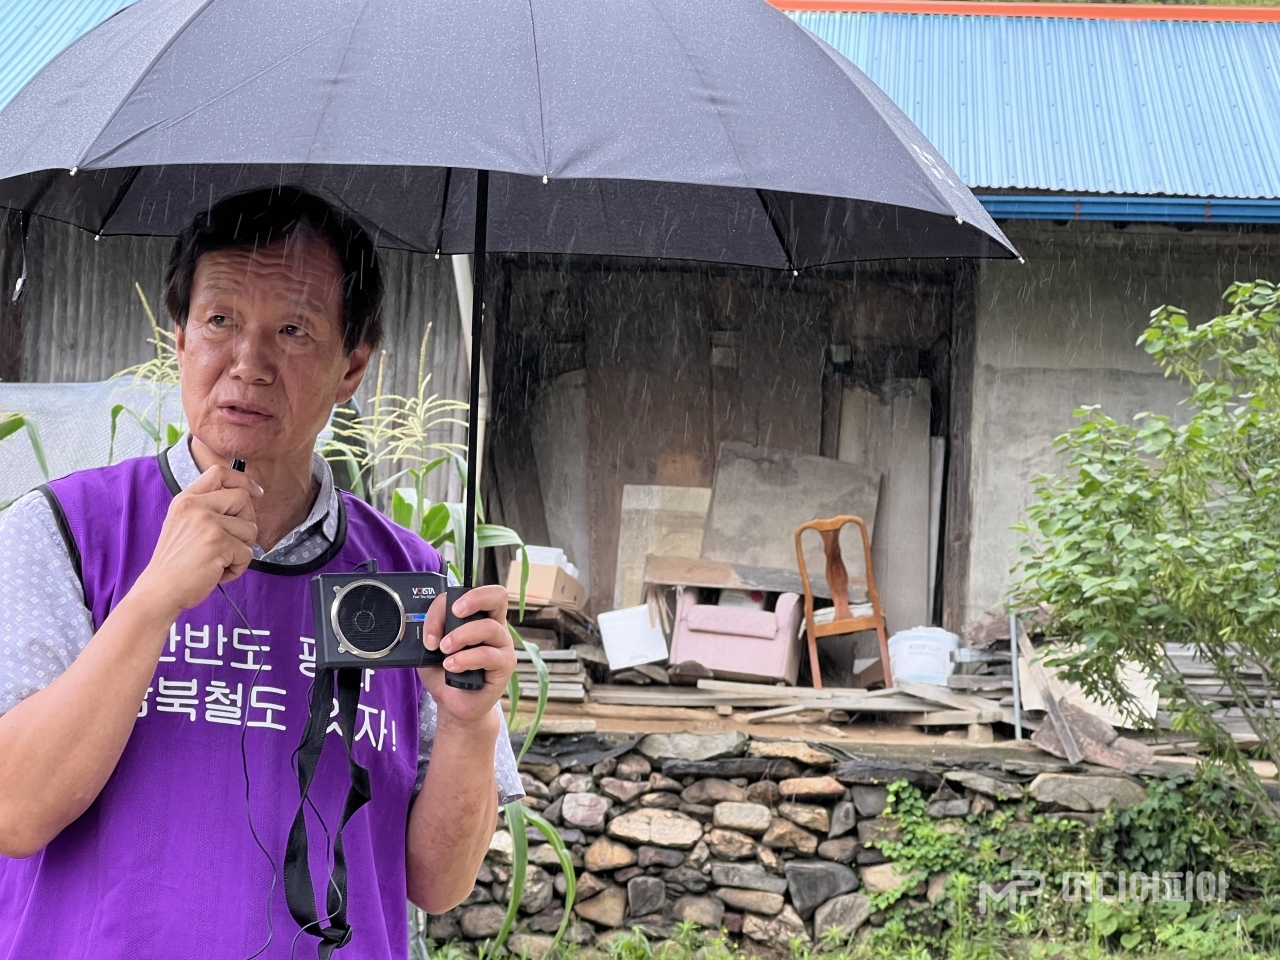 비가 내리는 가운데 우산을 쓴 이용길 회장은 미소띤 얼굴로 "민촌이 10대에 살았던 큰고모 집이 있는 분텃골은 분토가 나서 붙여진 이름"이라고 덧붙여 설명했다. / 사진 =강승혁 전문 기자